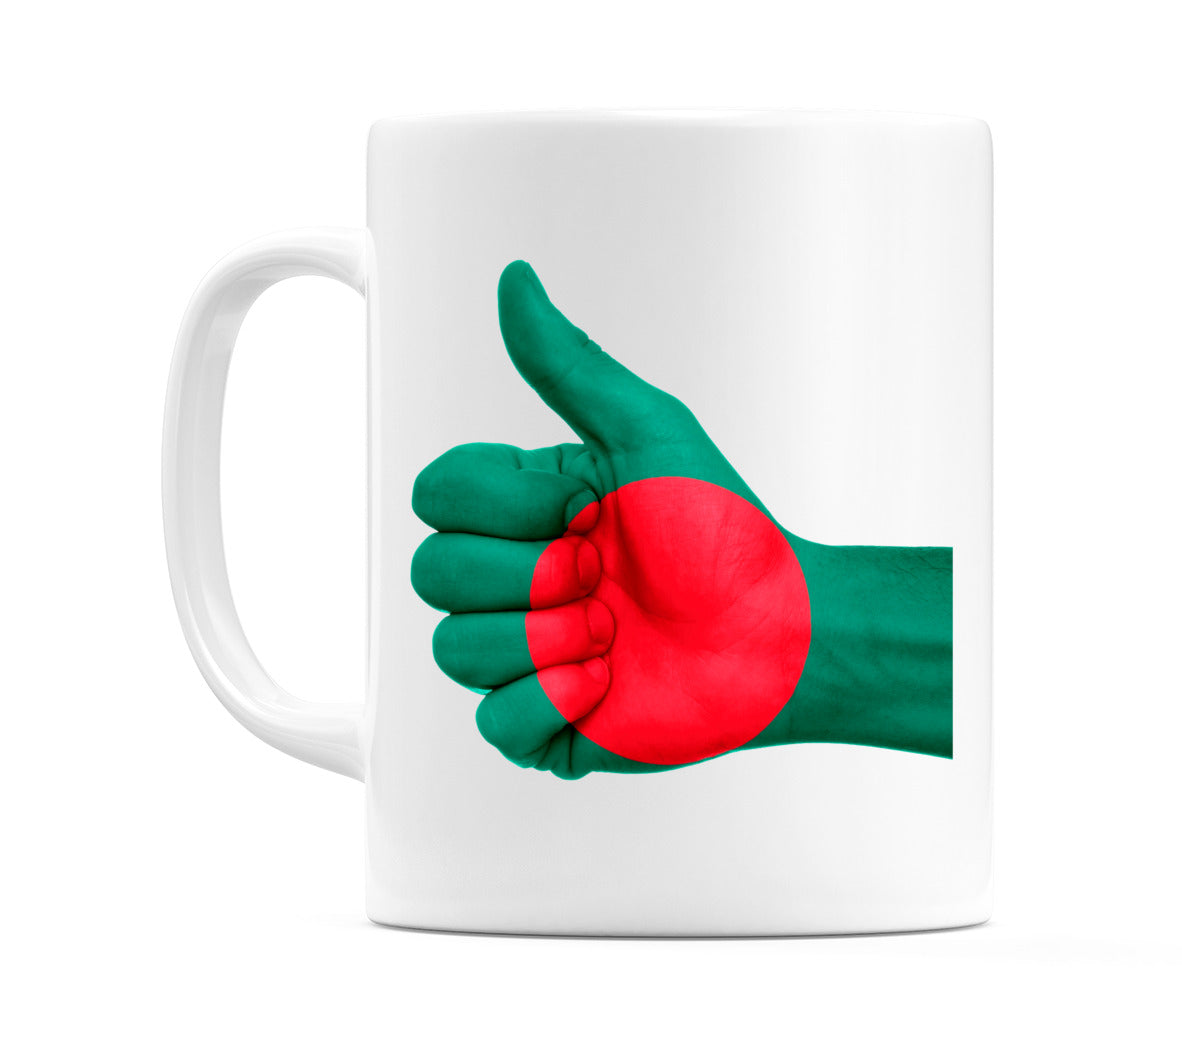 Bangladesh Thumbs up Flag Mug